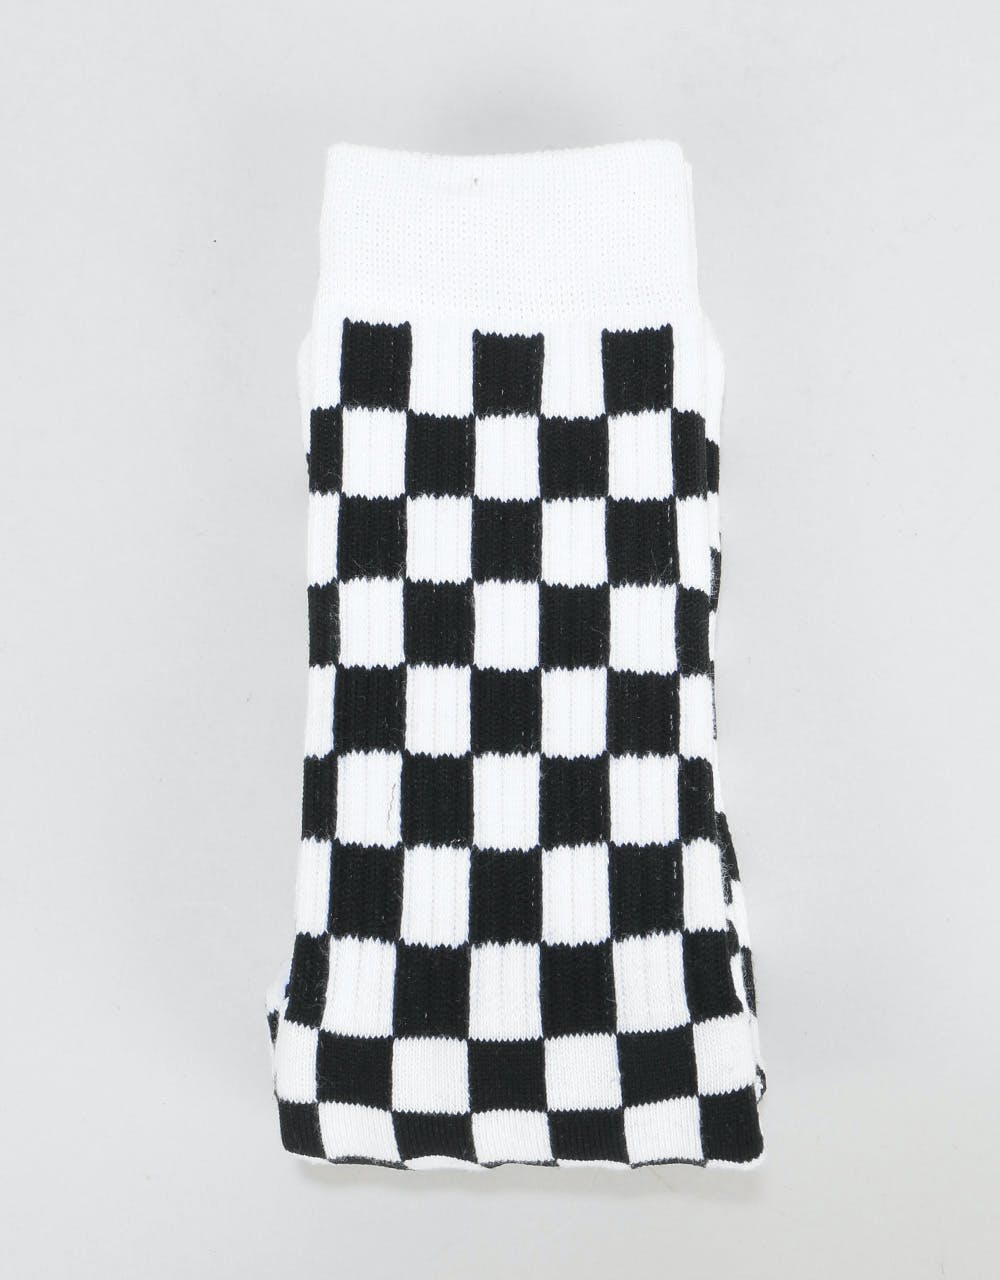 Route One Checkerboard Crew Socks - Black/White